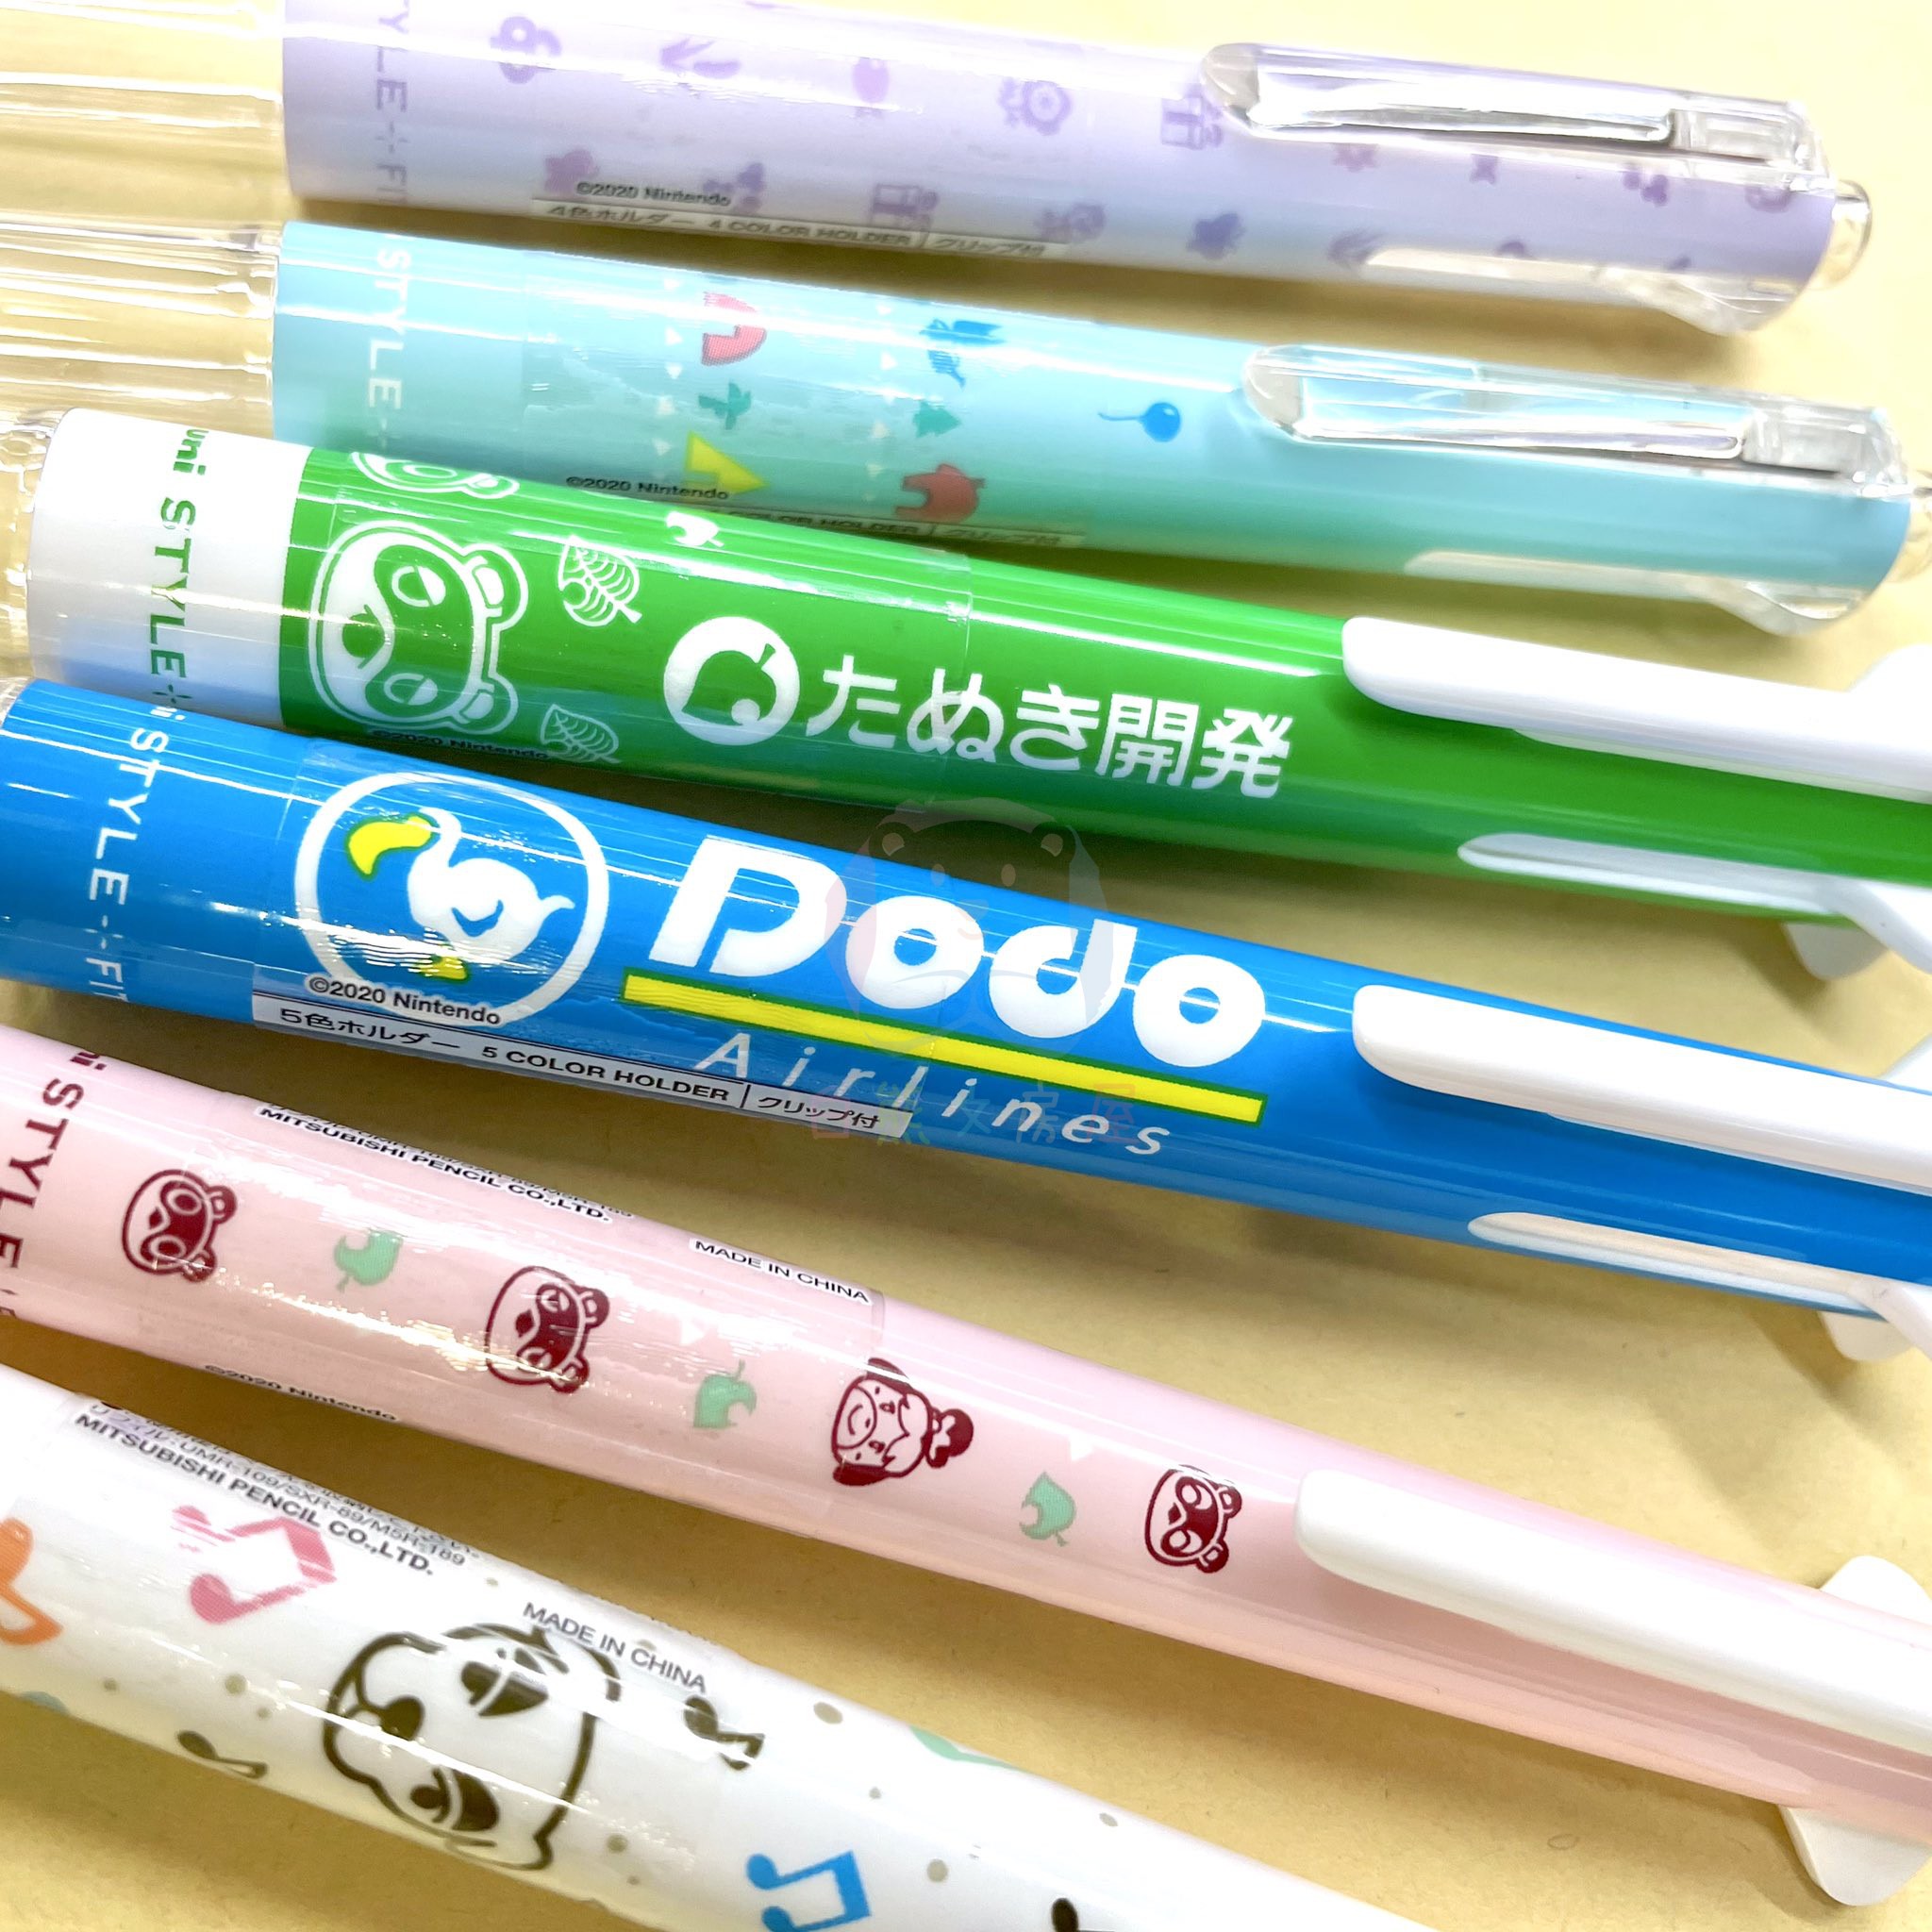 现货日本uni三菱限定联名动物森style fit多功能模块笔多色中性笔